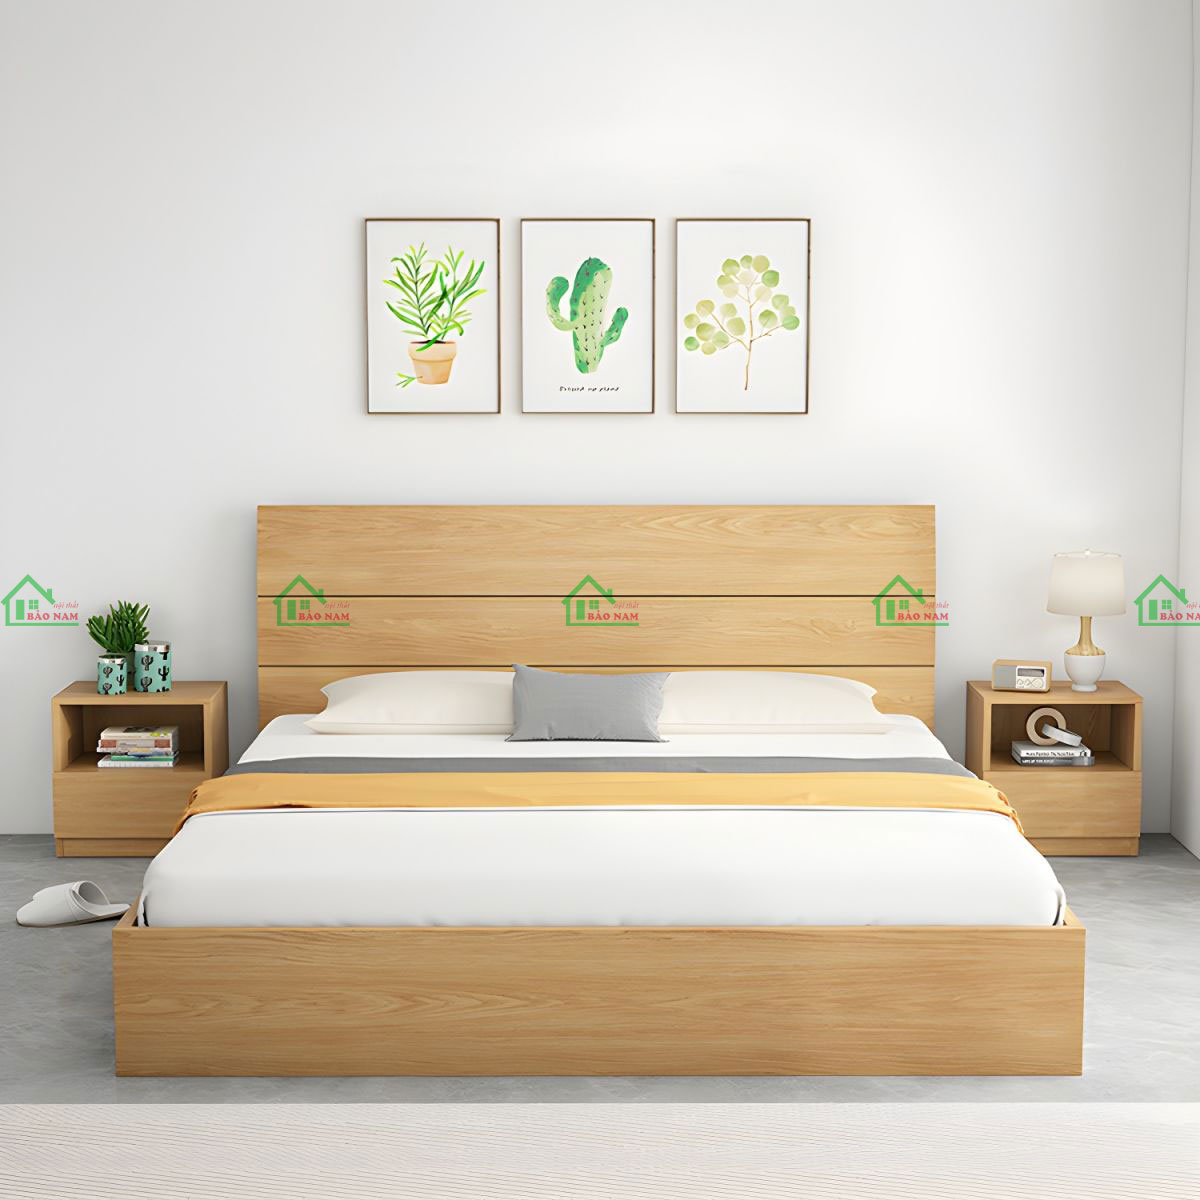 Giường ngủ gỗ tự nhiên hiện đại